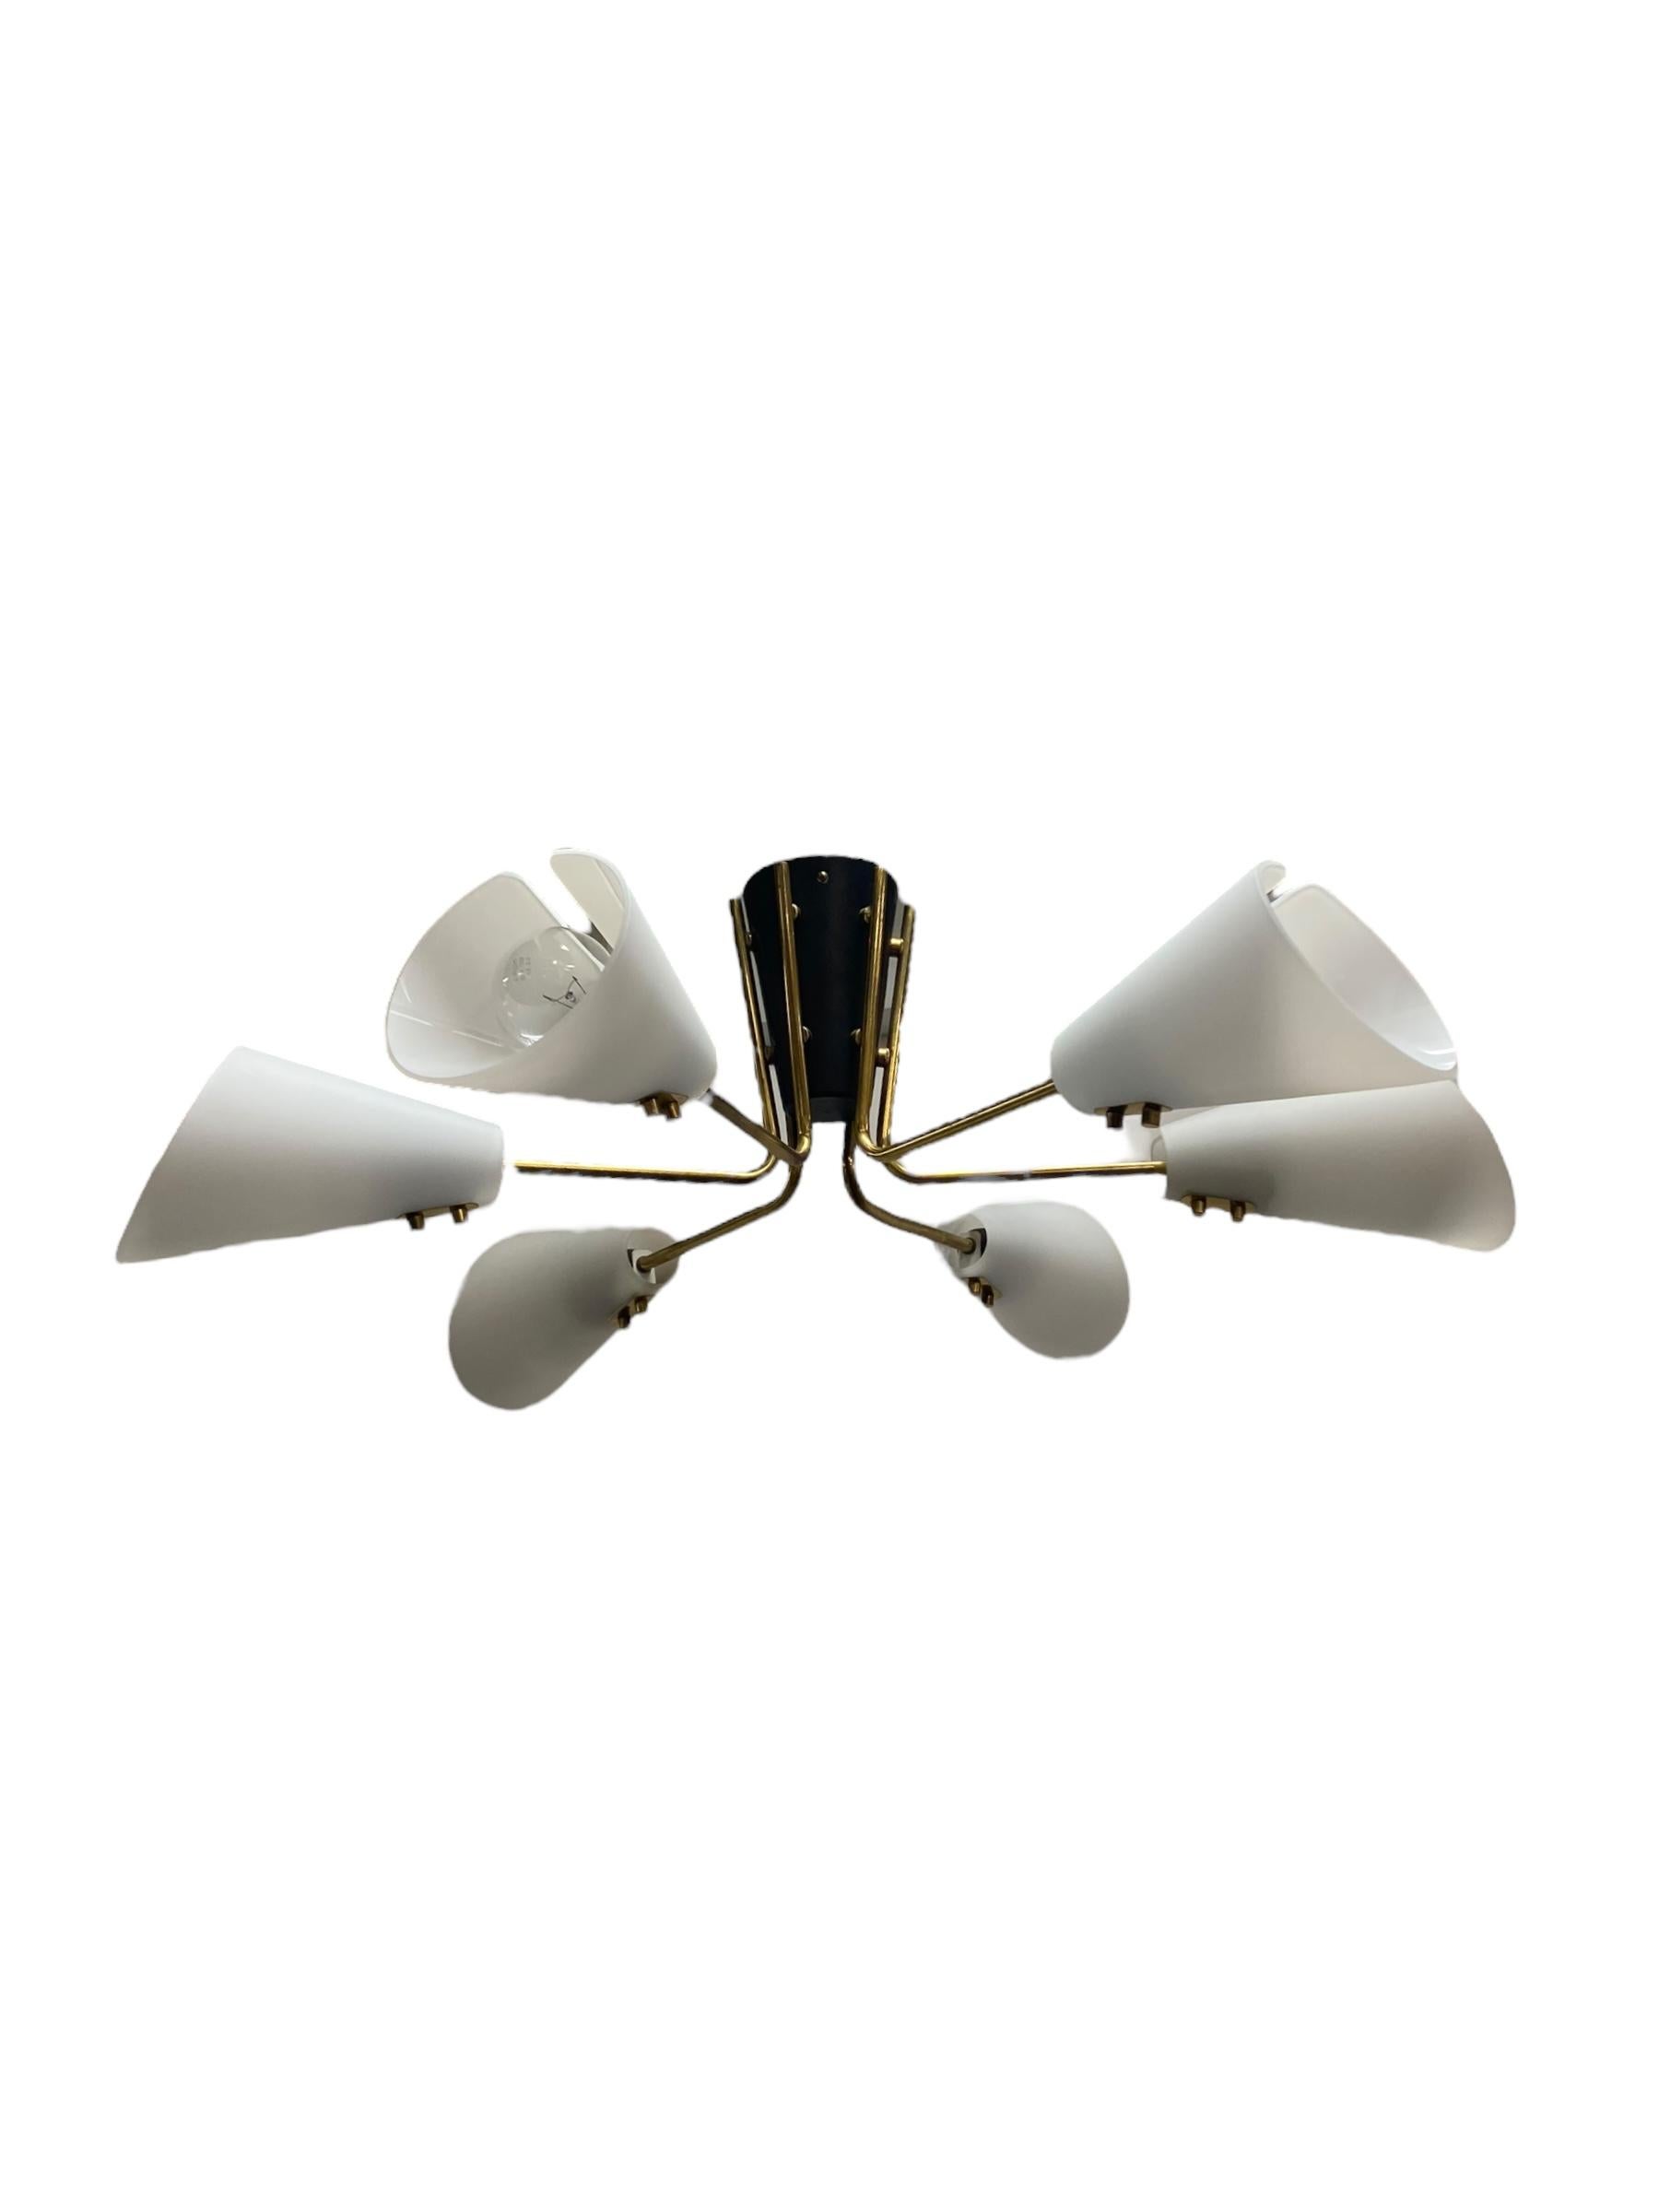 Une lampe brillante d'Itsu datant des années 1950. Ce type de lampe s'intègre bien dans tout type d'intérieur design. Le combo noir et blanc avec les tiges en laiton doré est simple, élégant, minimaliste et fonctionnel. Un look vintage supérieur qui